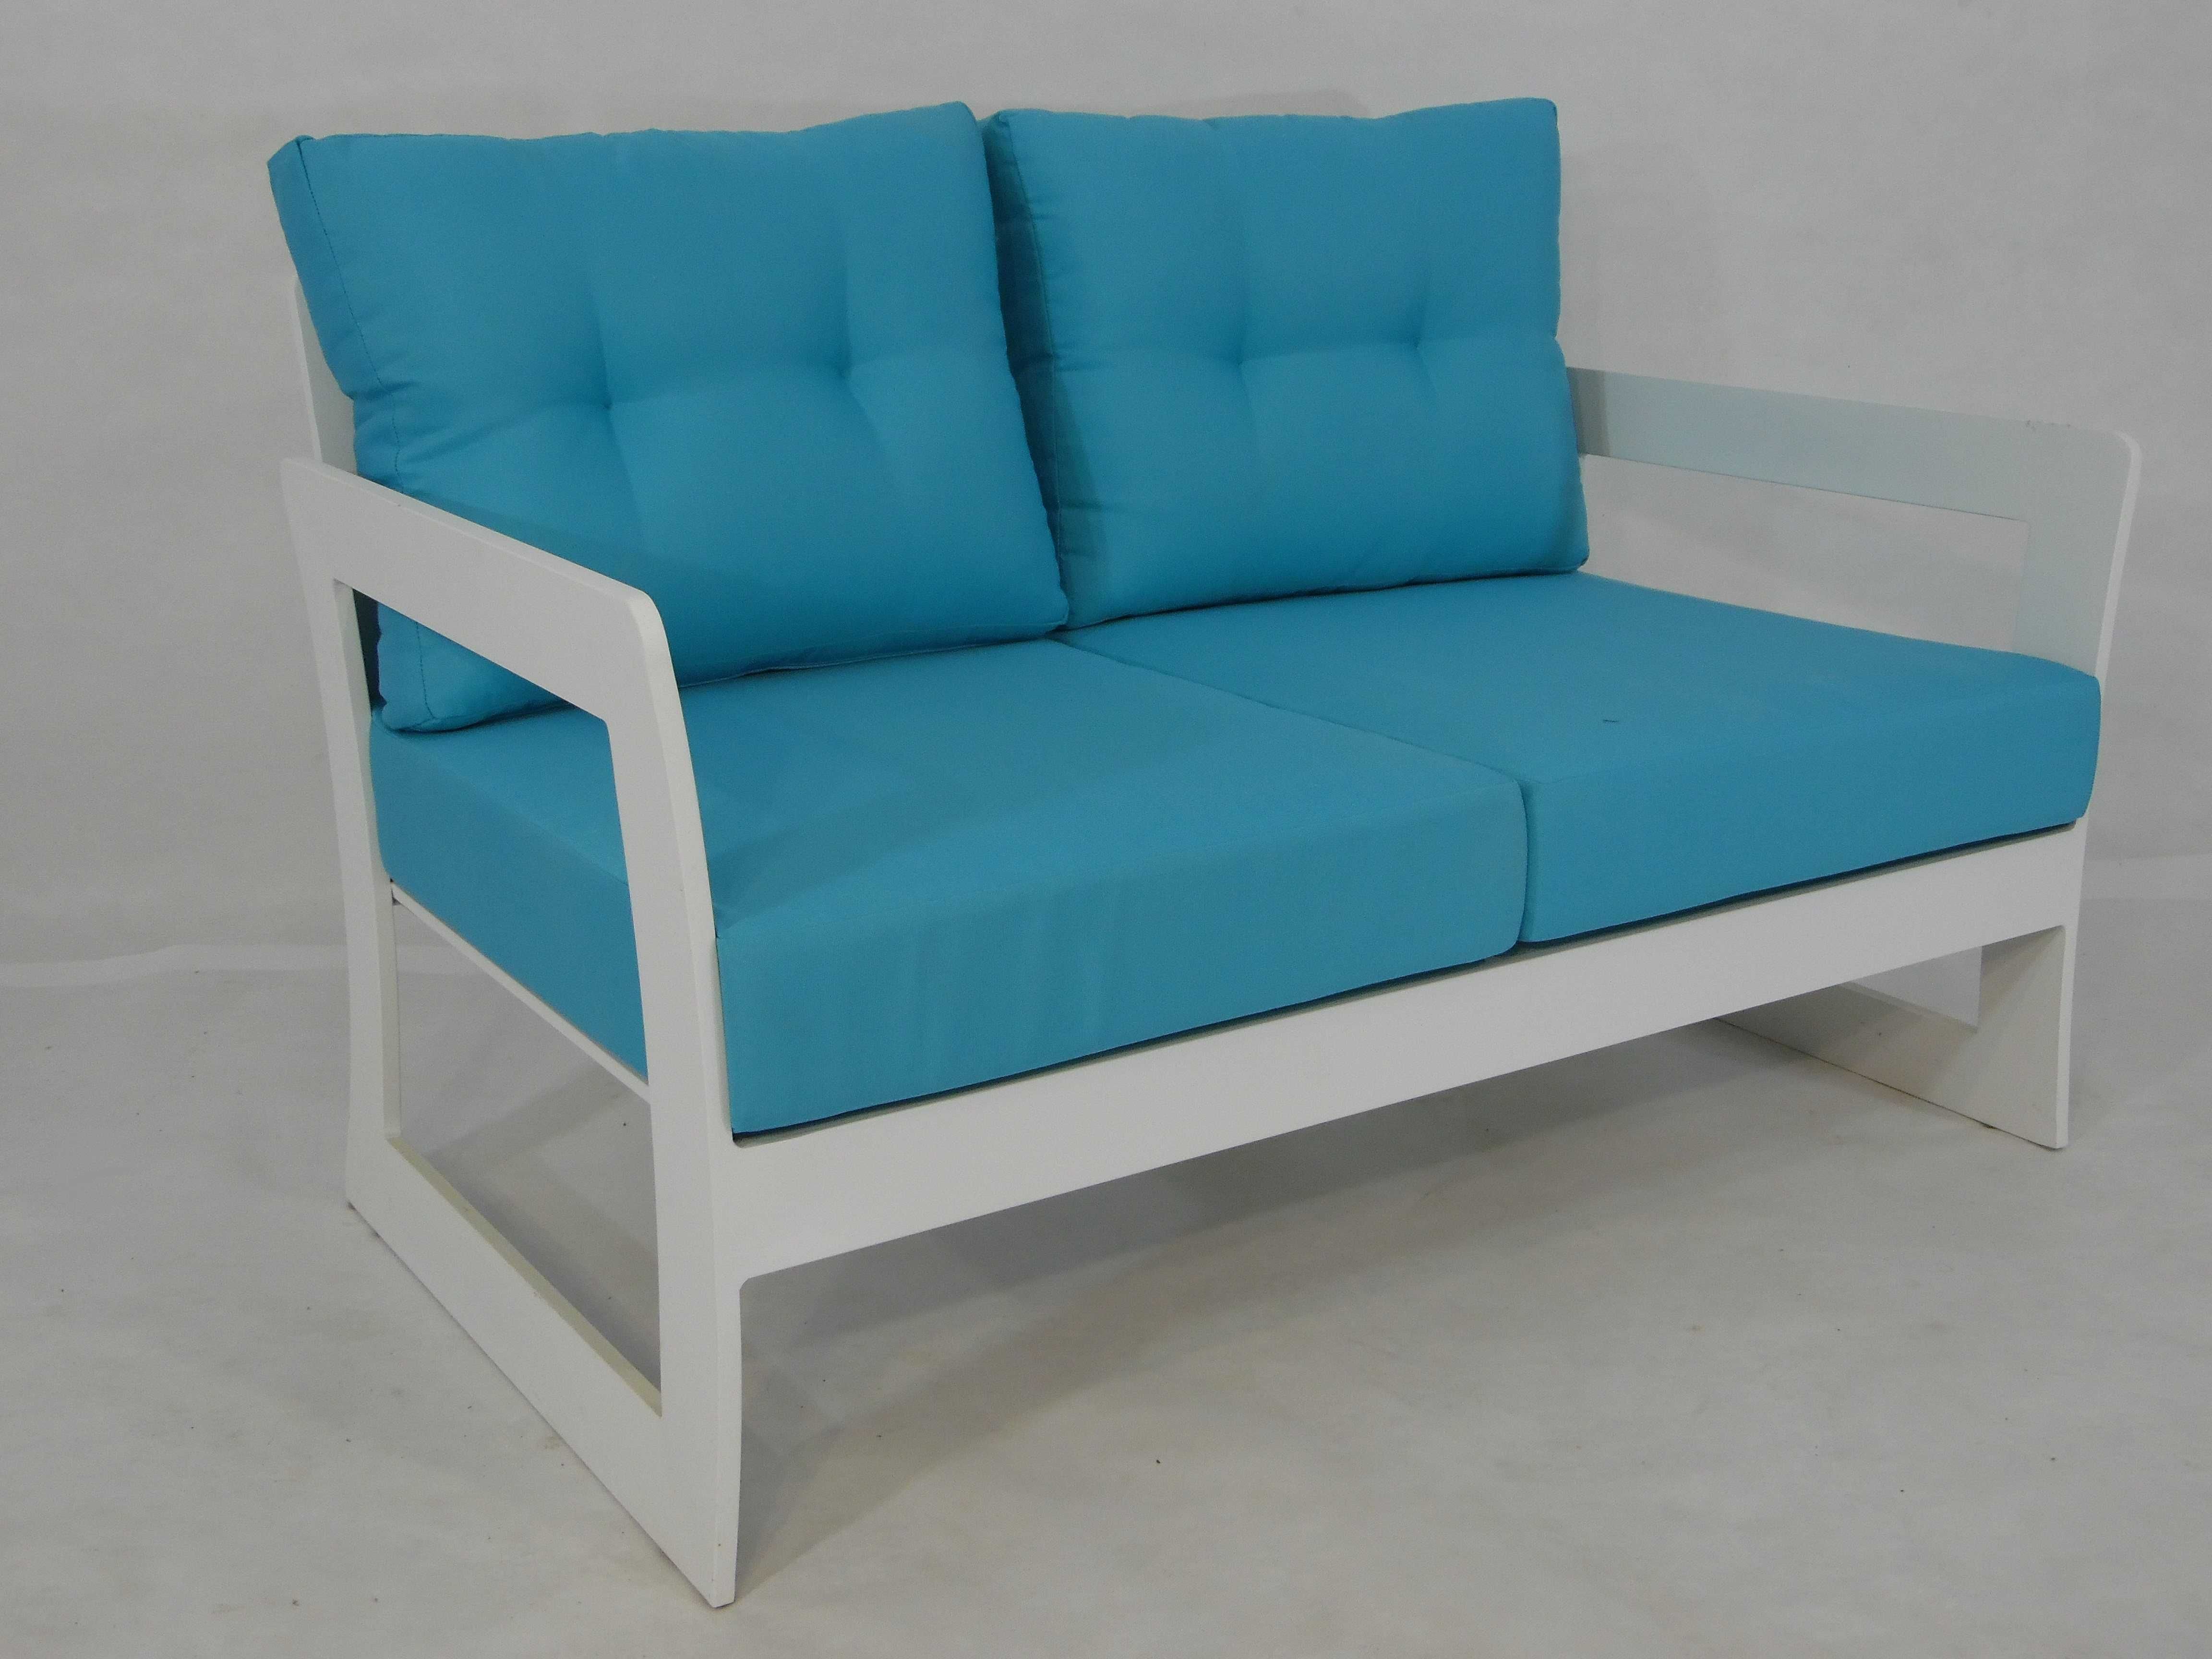 Meble ogrodowe Azalia - kanapa fotele i stoliki nowe biały niebieski